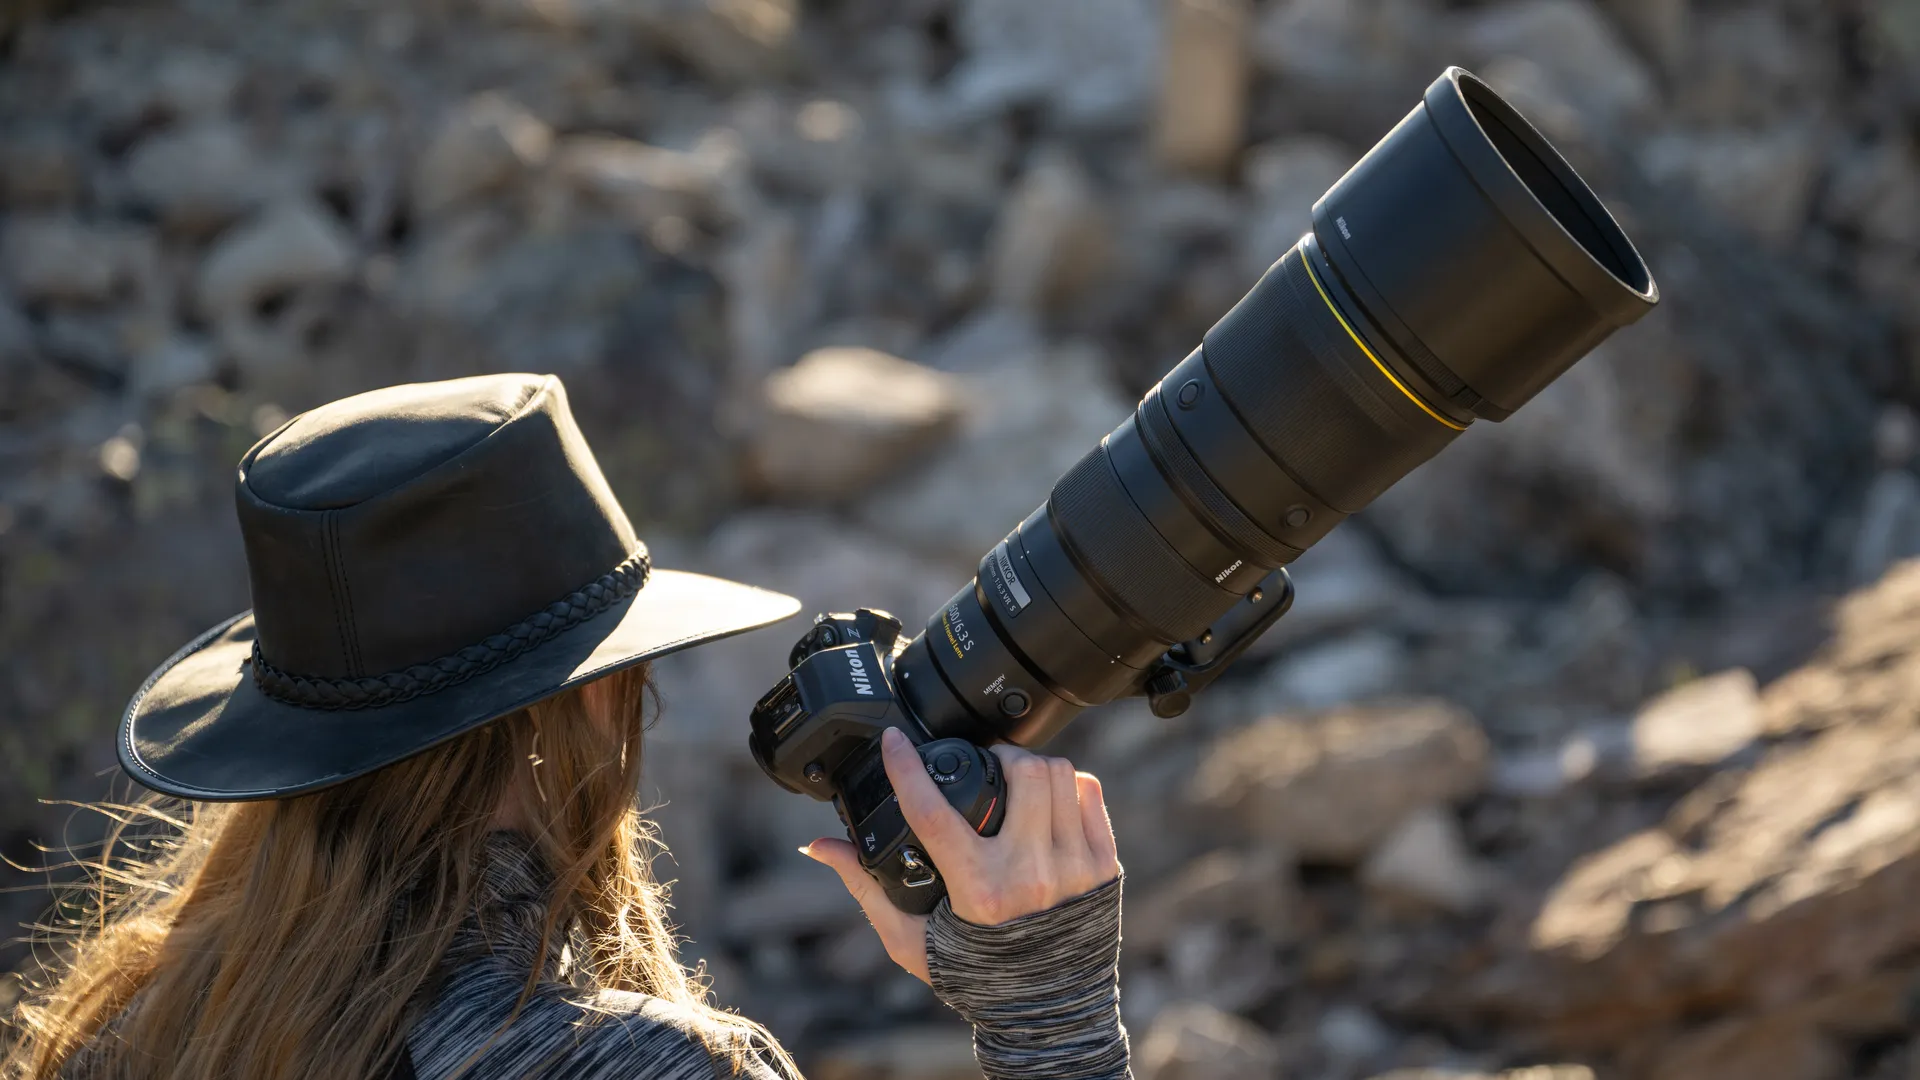 Nikon Z 600mm f/6.3 VR S : Une Option Supertéléobjectif Plus Abordable pour les Photographes à Main Levée